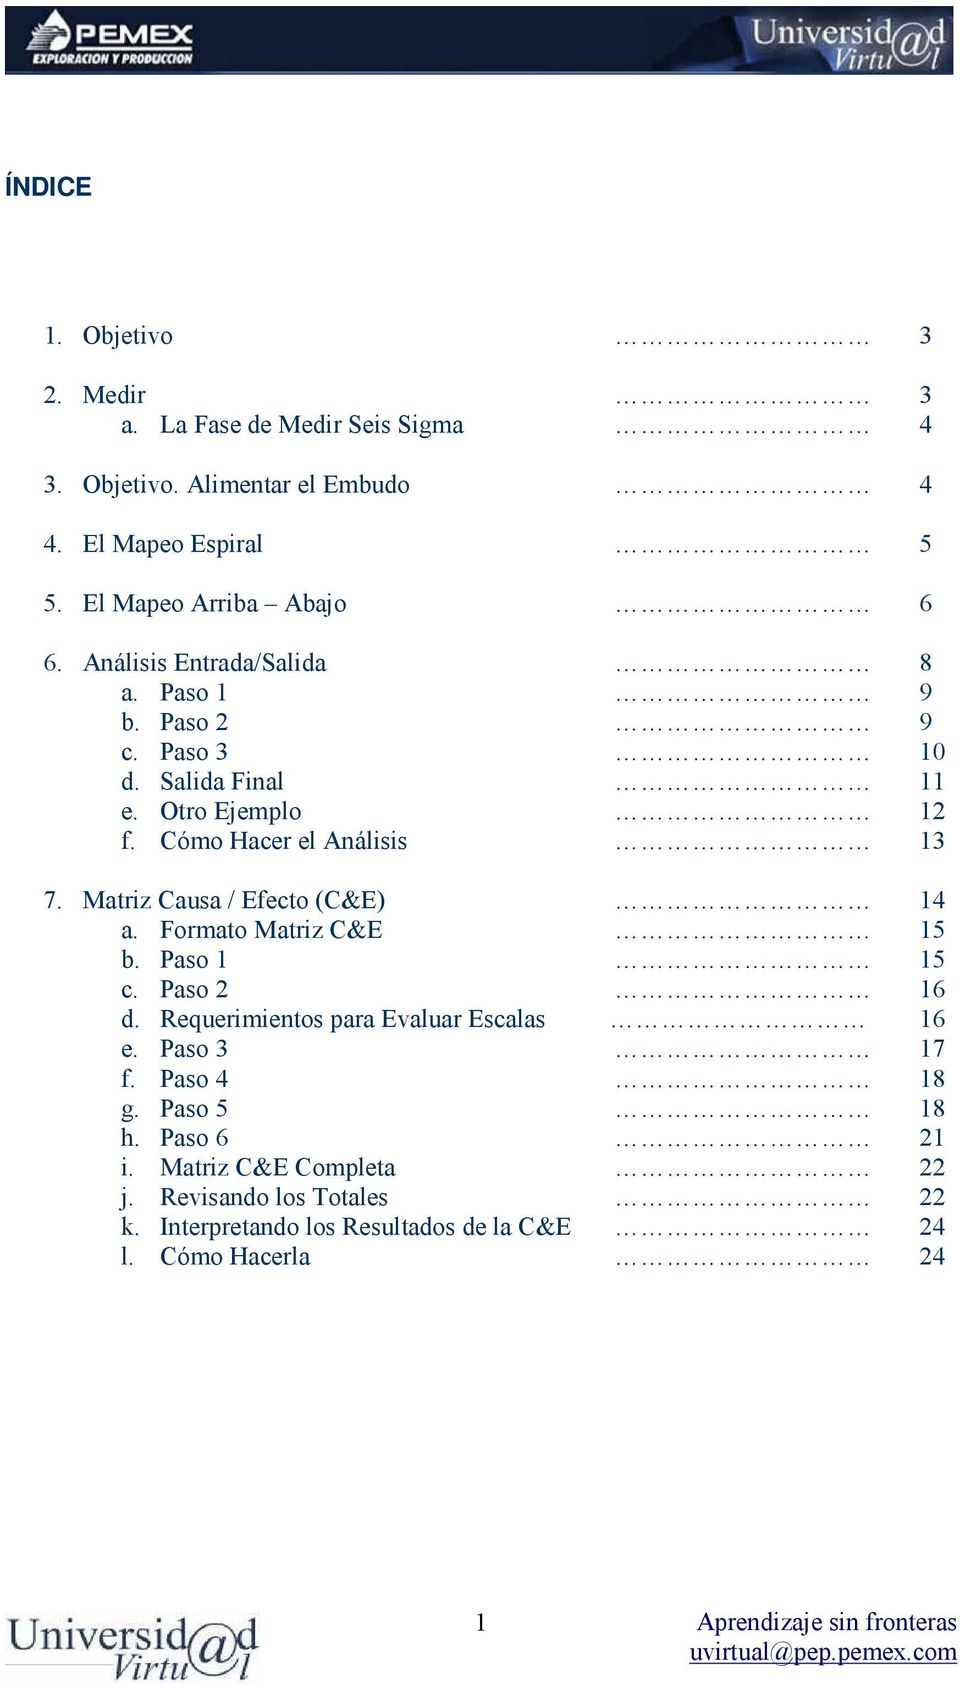 Cómo Hacer el Análisis 13 7. Matriz Causa / Efecto (C&E) 14 a. Formato Matriz C&E 15 b. Paso 1 15 c. Paso 2 16 d.